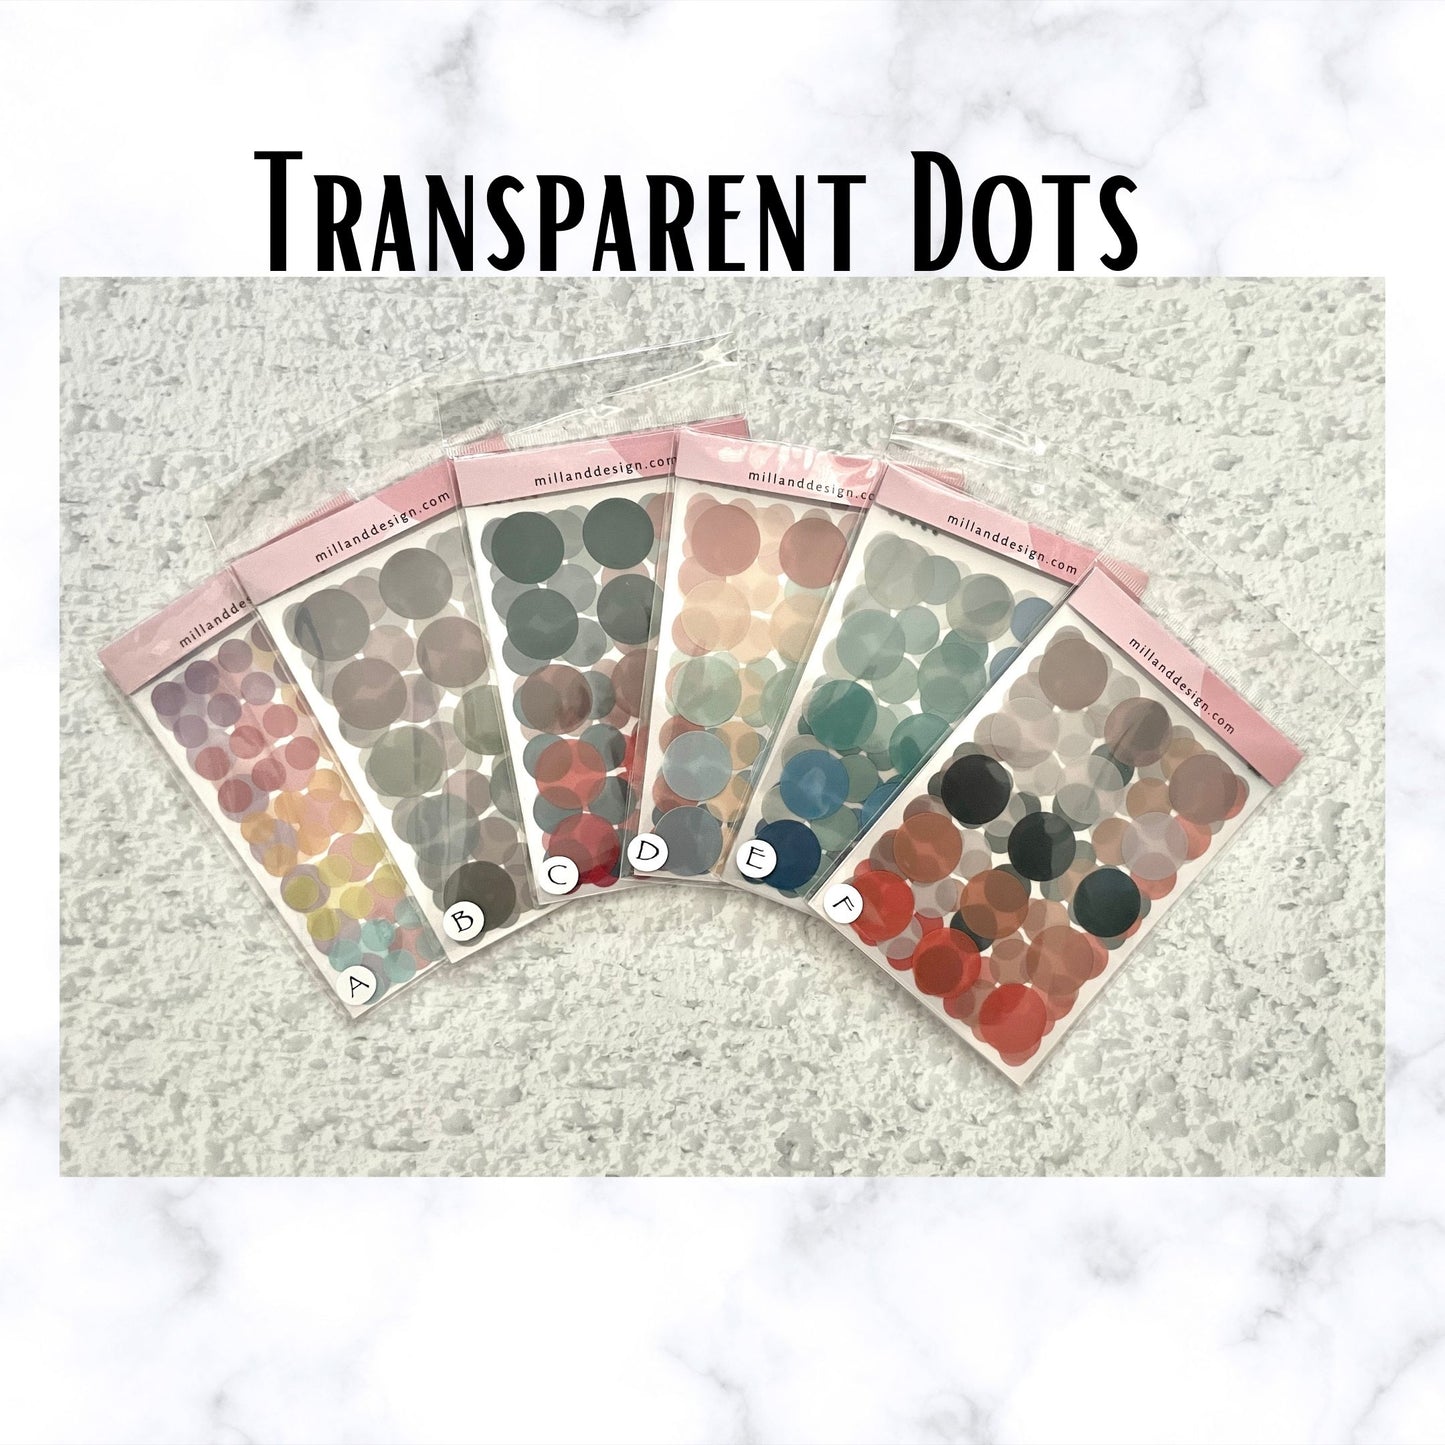 Transparent Dots - 3 sizes